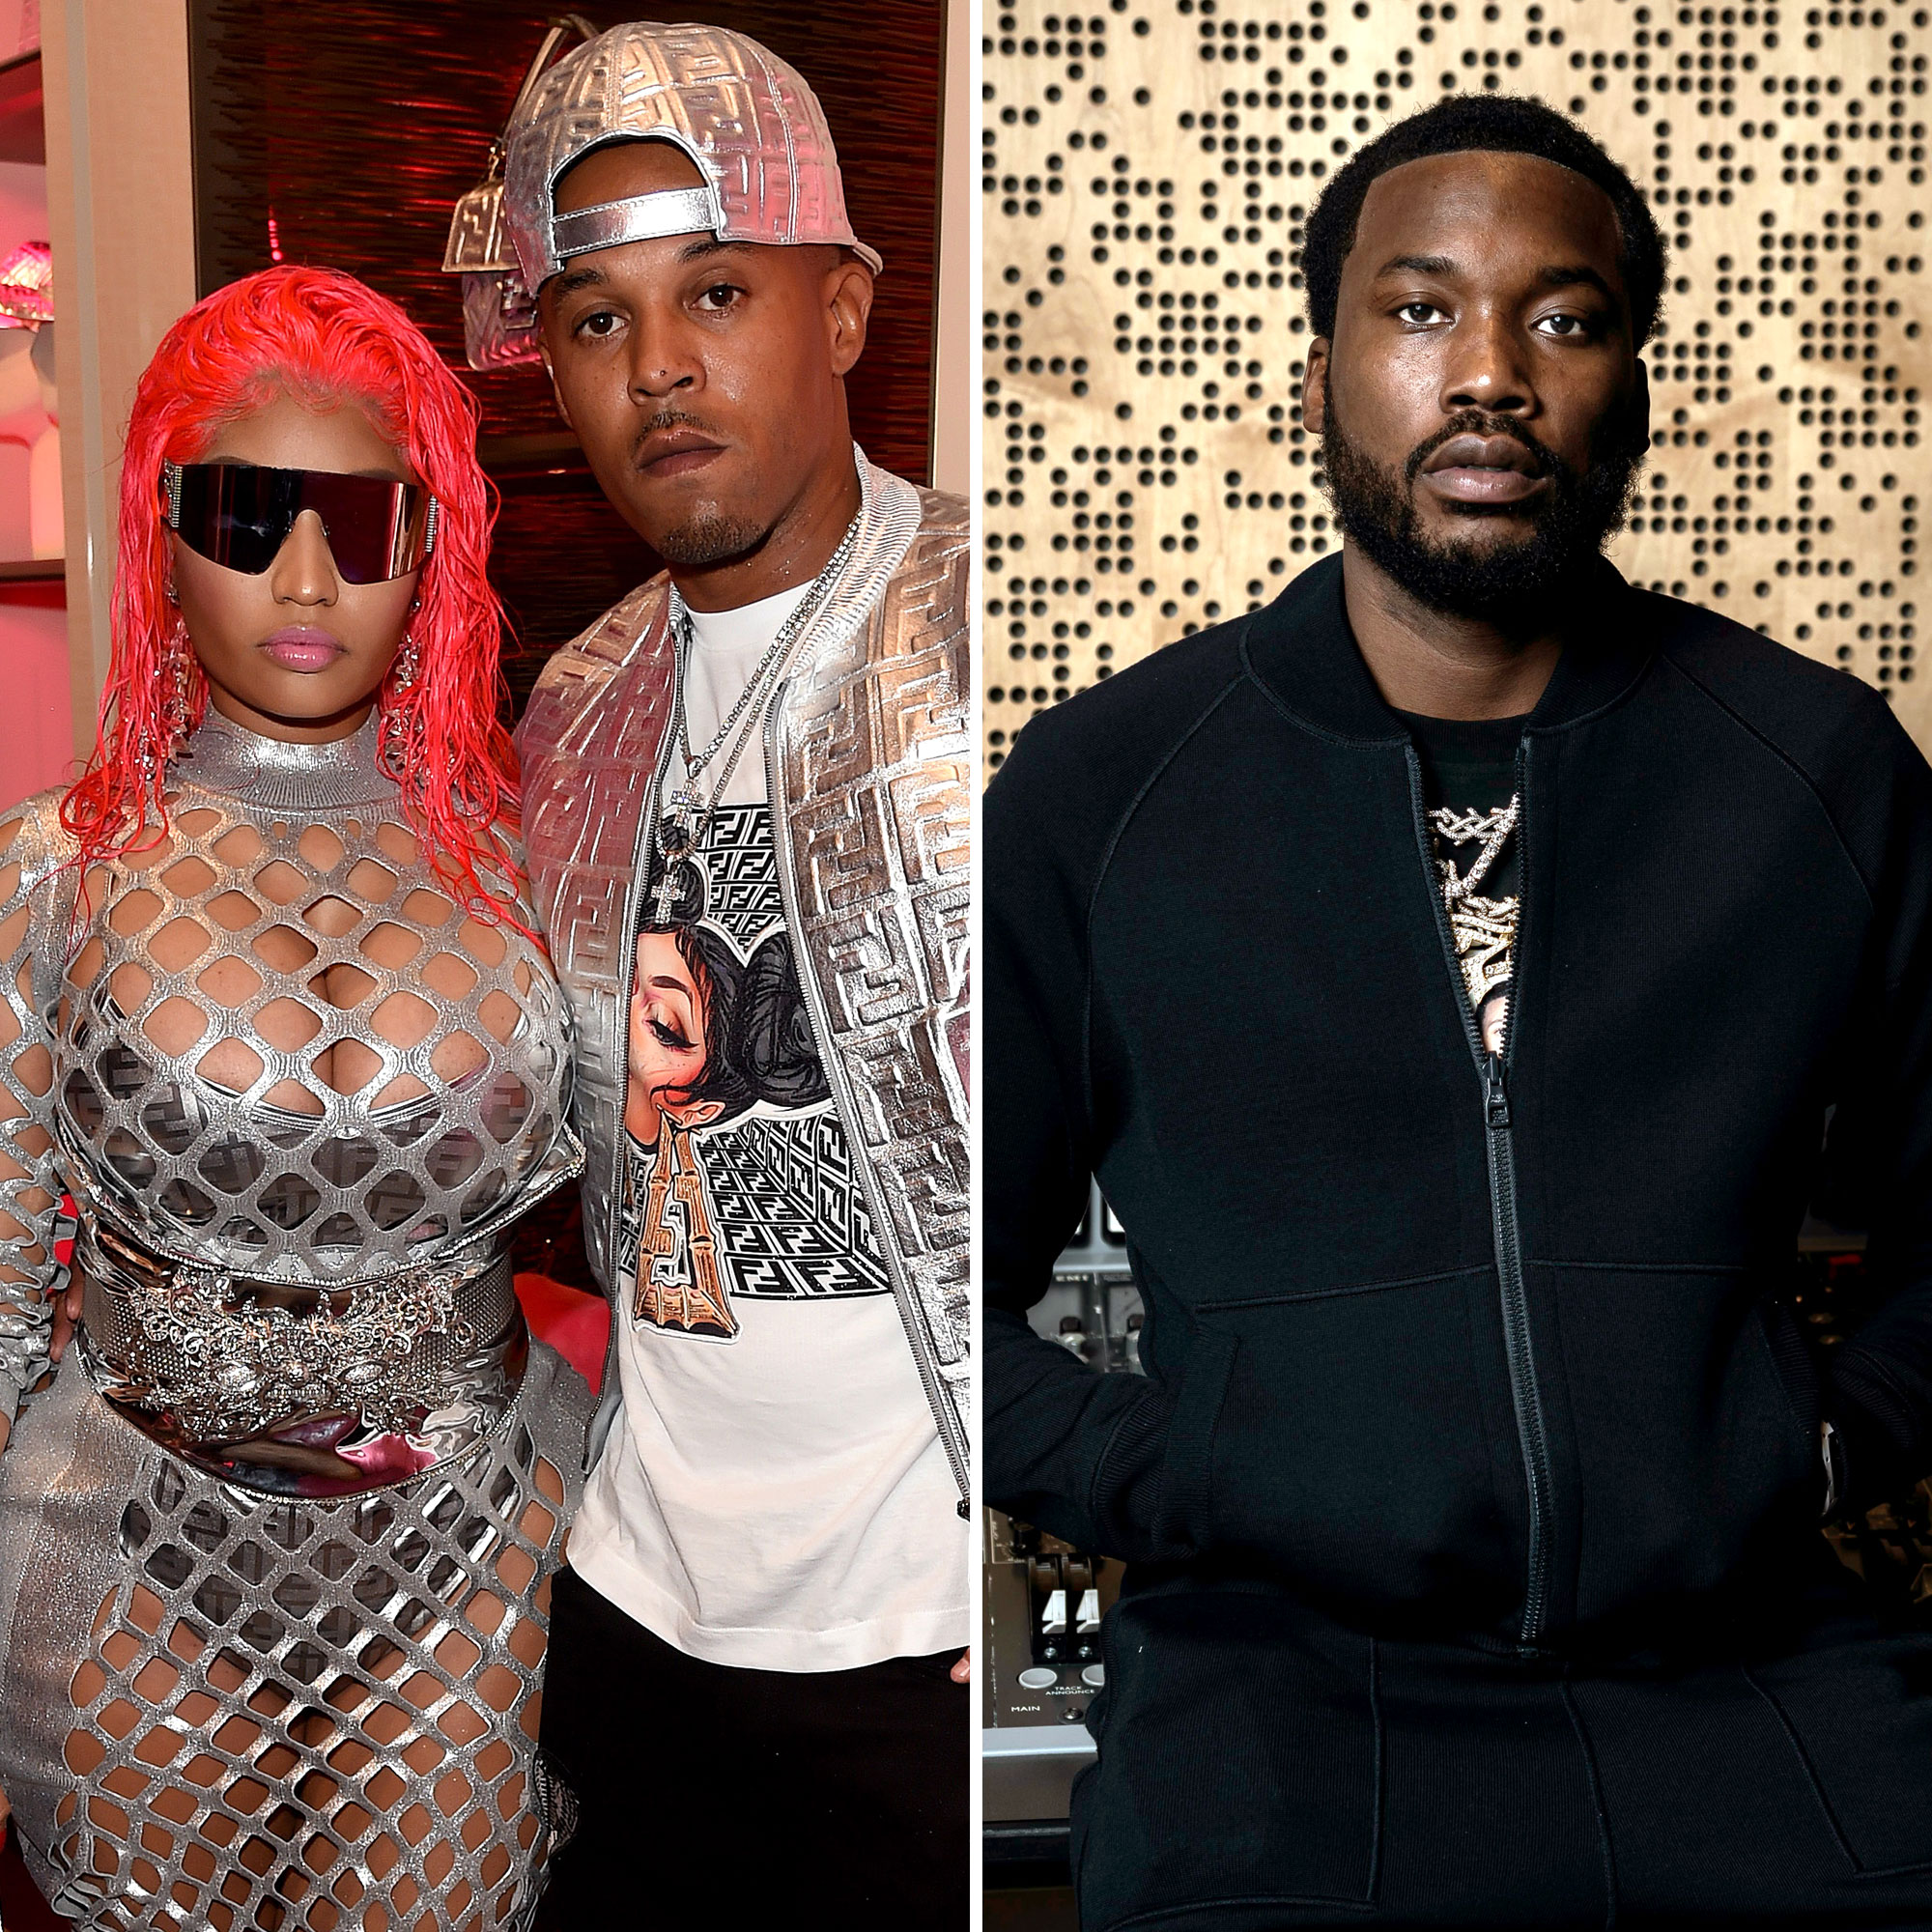 Why Did Nicki Minaj and Meek Mill Break Up?